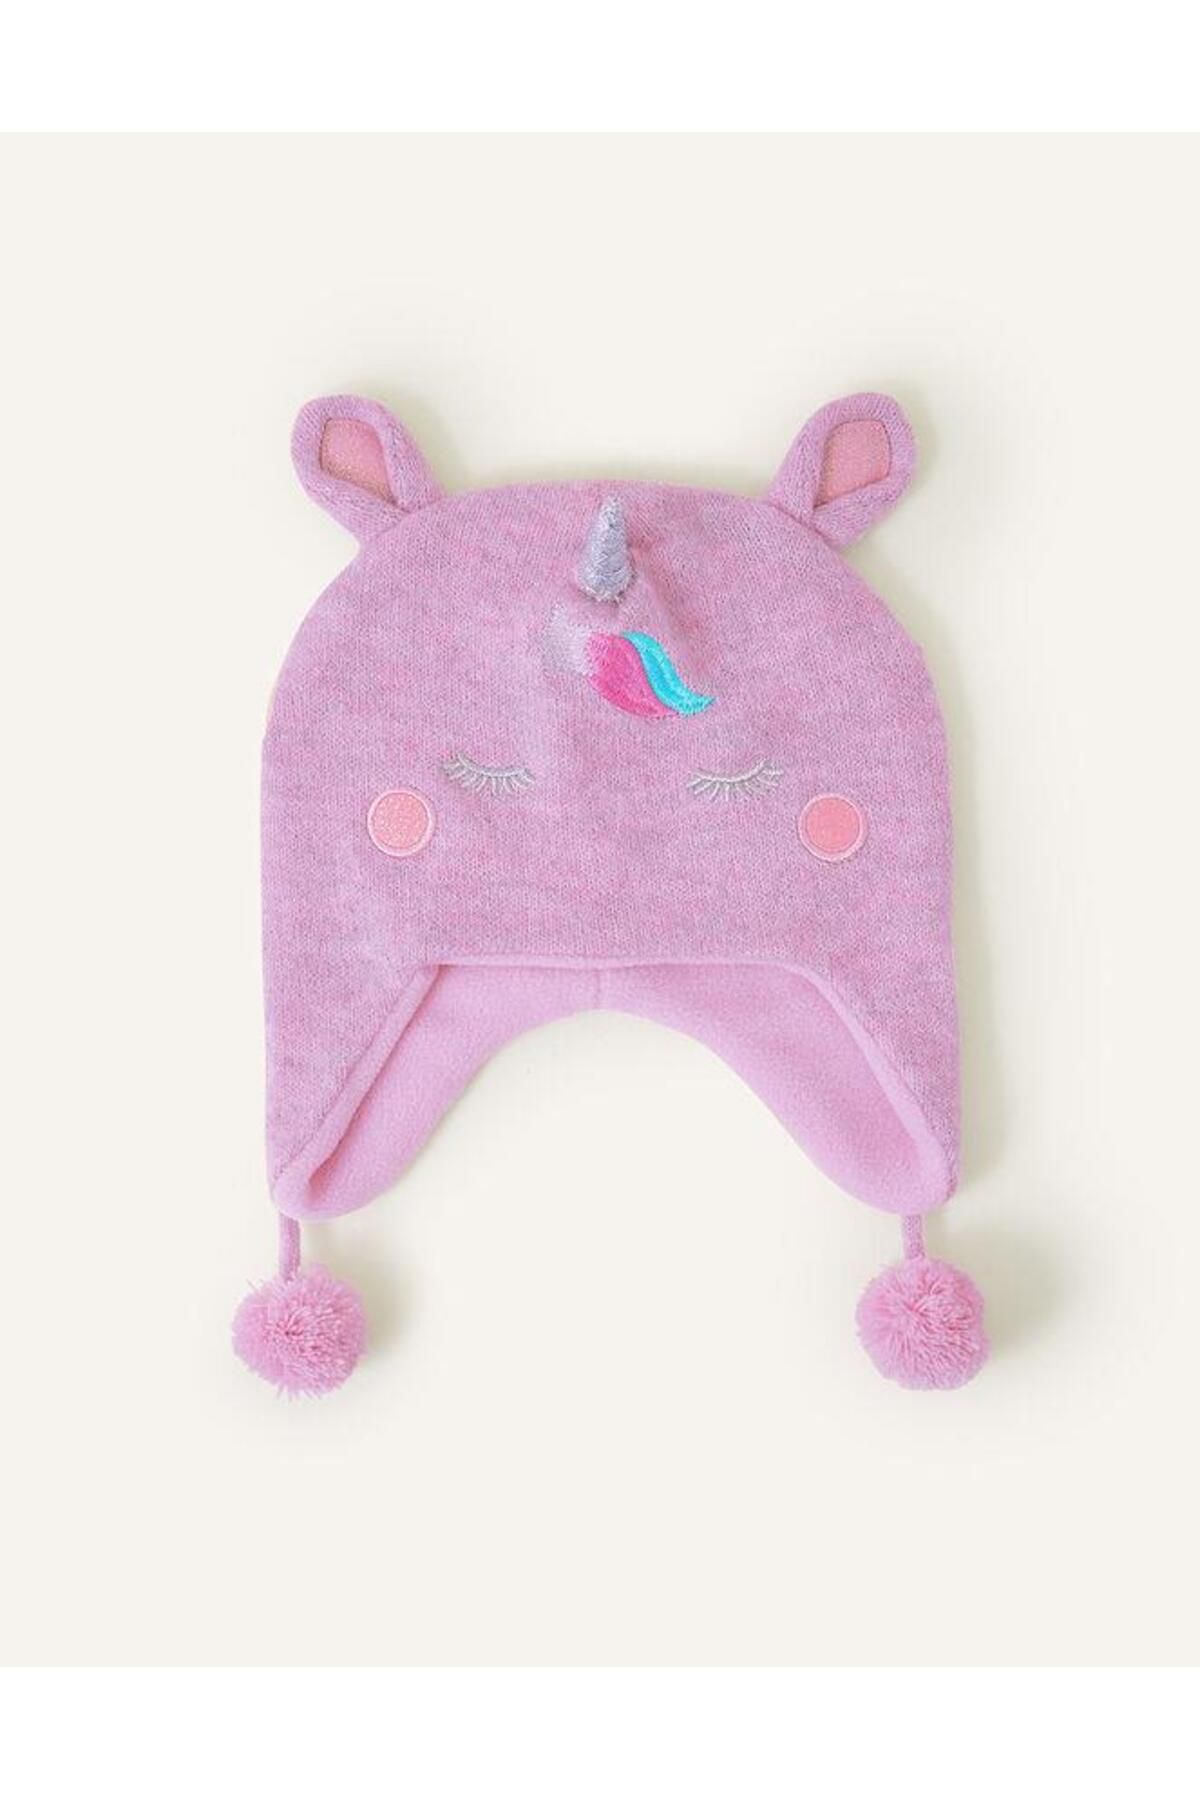 Accessorize Kız Çocuk için Unicorn Örgü Mor Renk Şapka